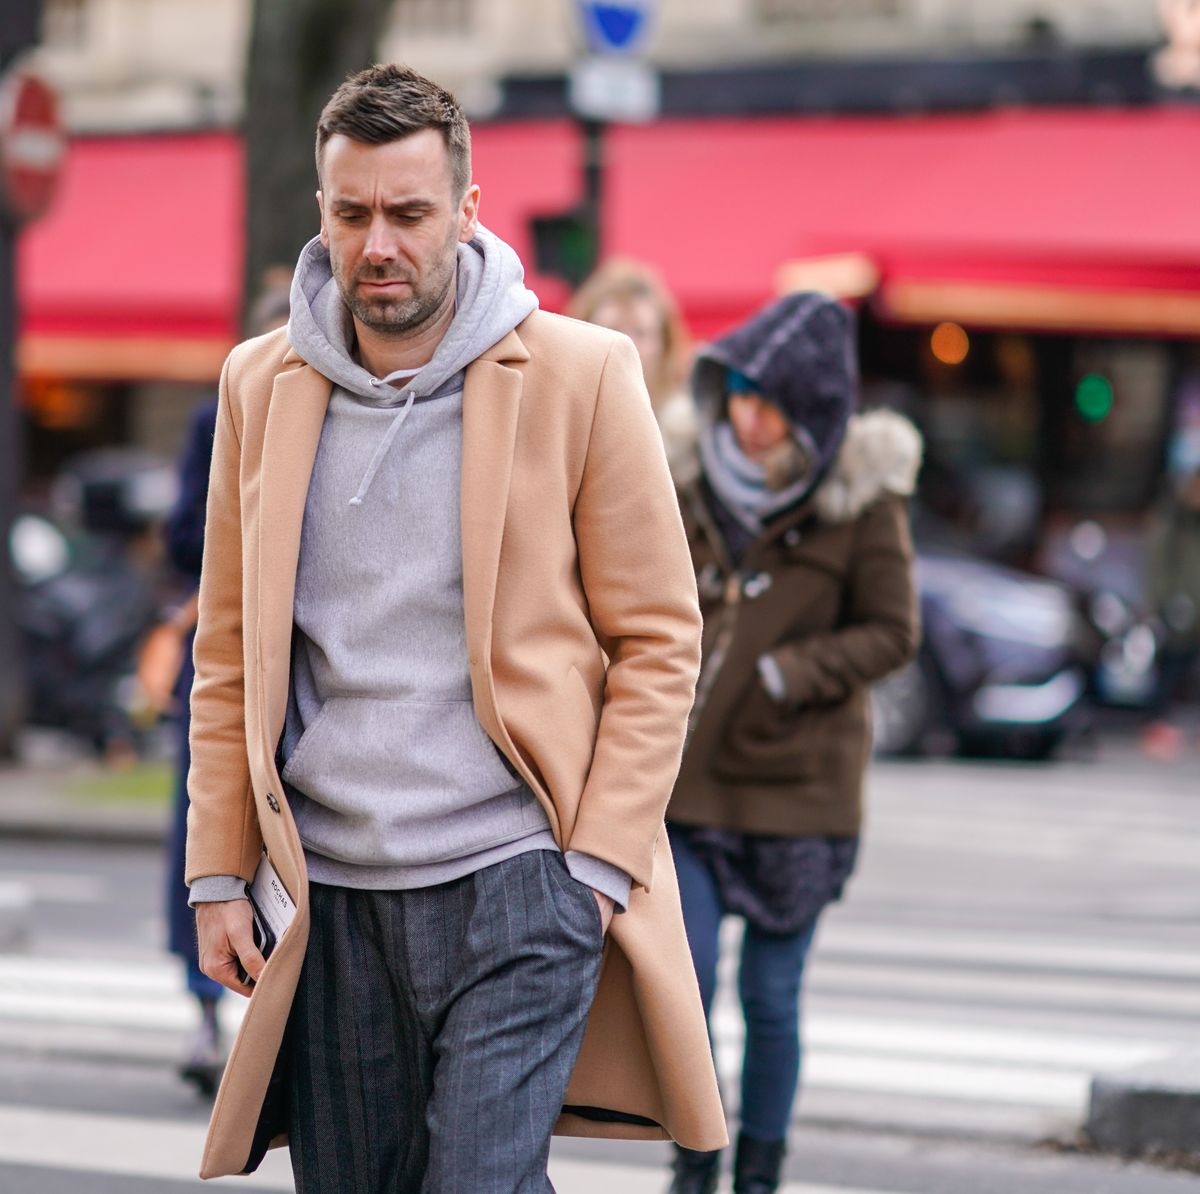 Sudadera con capucha para hombre y abrigo: cómo combinarlos